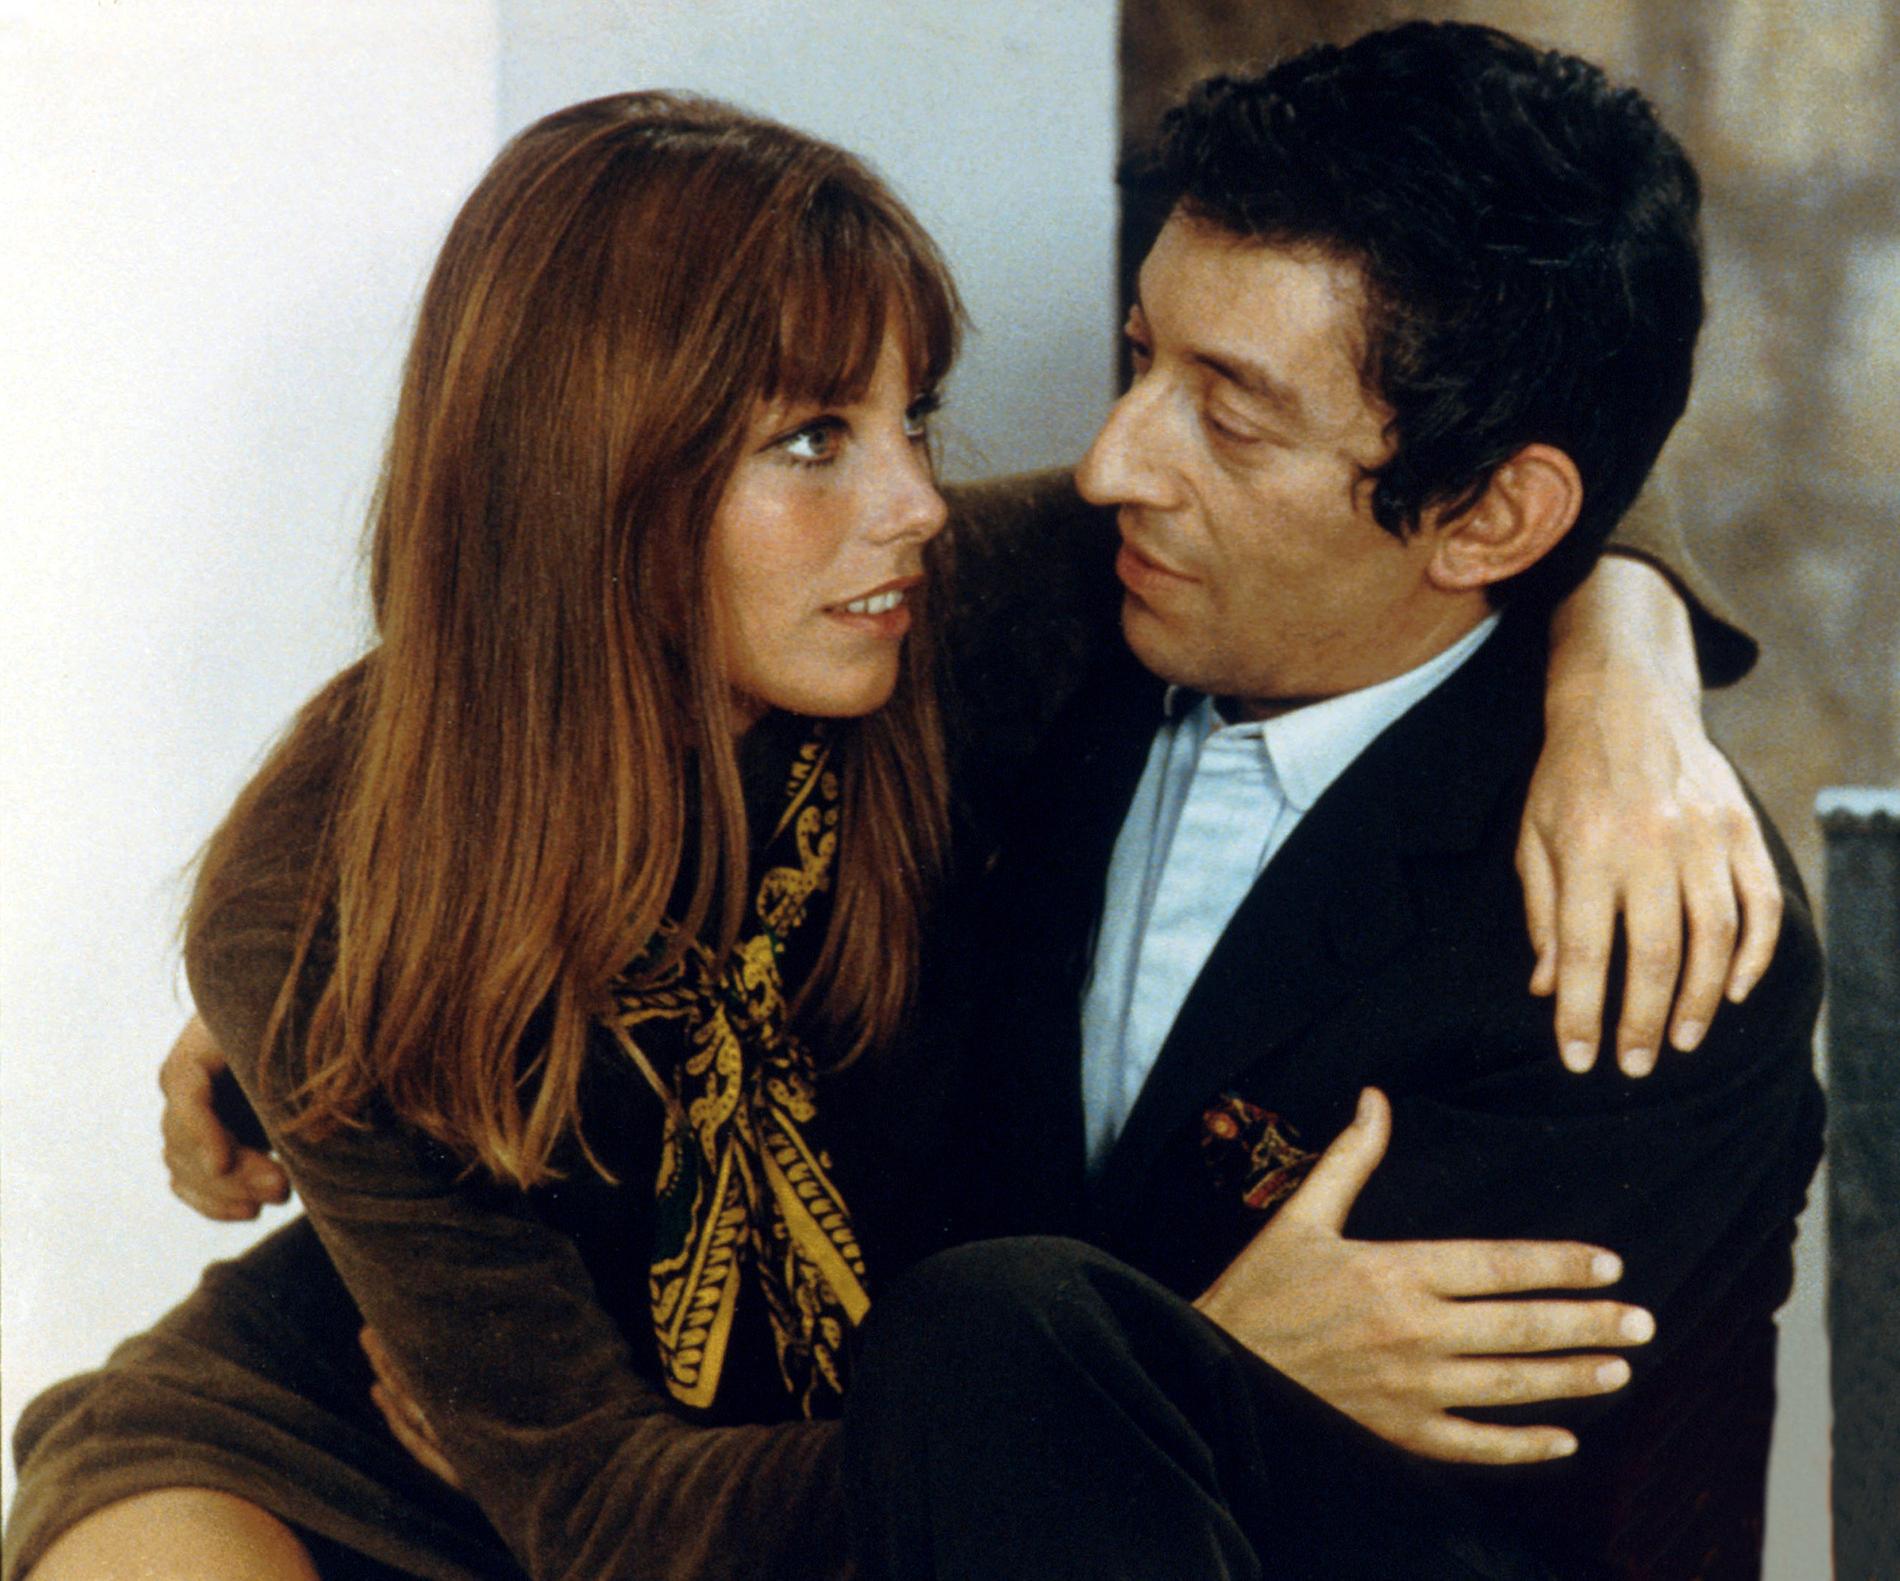 Jane Birkin och Serge Gainsbourg 1968. Förhållandet beskrevs som ”romansen mellan skönheten och odjuret” i internationell press. 